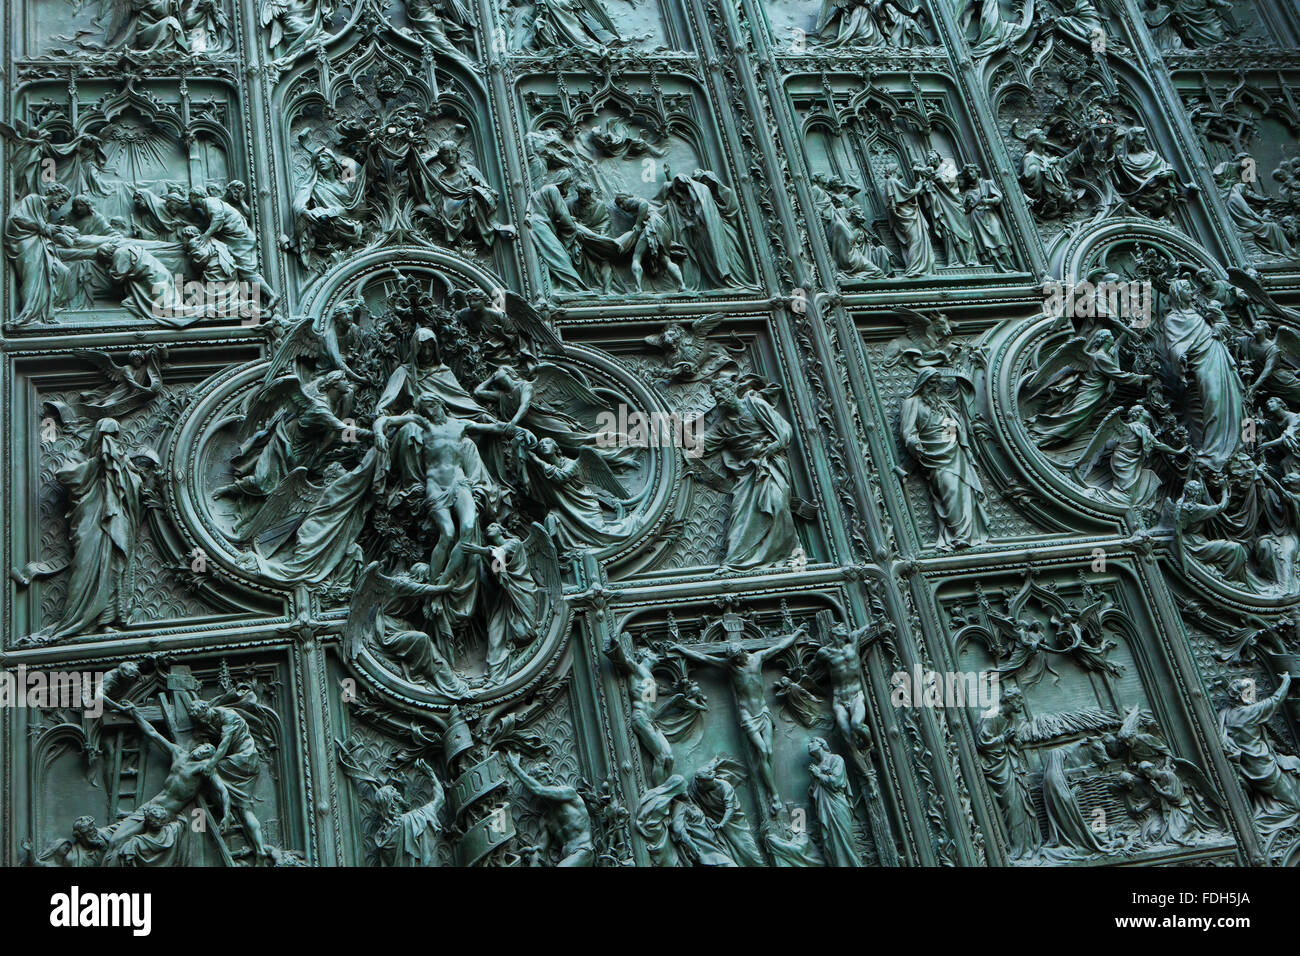 Porte de bronze de la principale cathédrale de Milan (Duomo di Milano) conçu par le sculpteur italien Ludovico Pogliaghi à Milan, Italie. Le b Banque D'Images